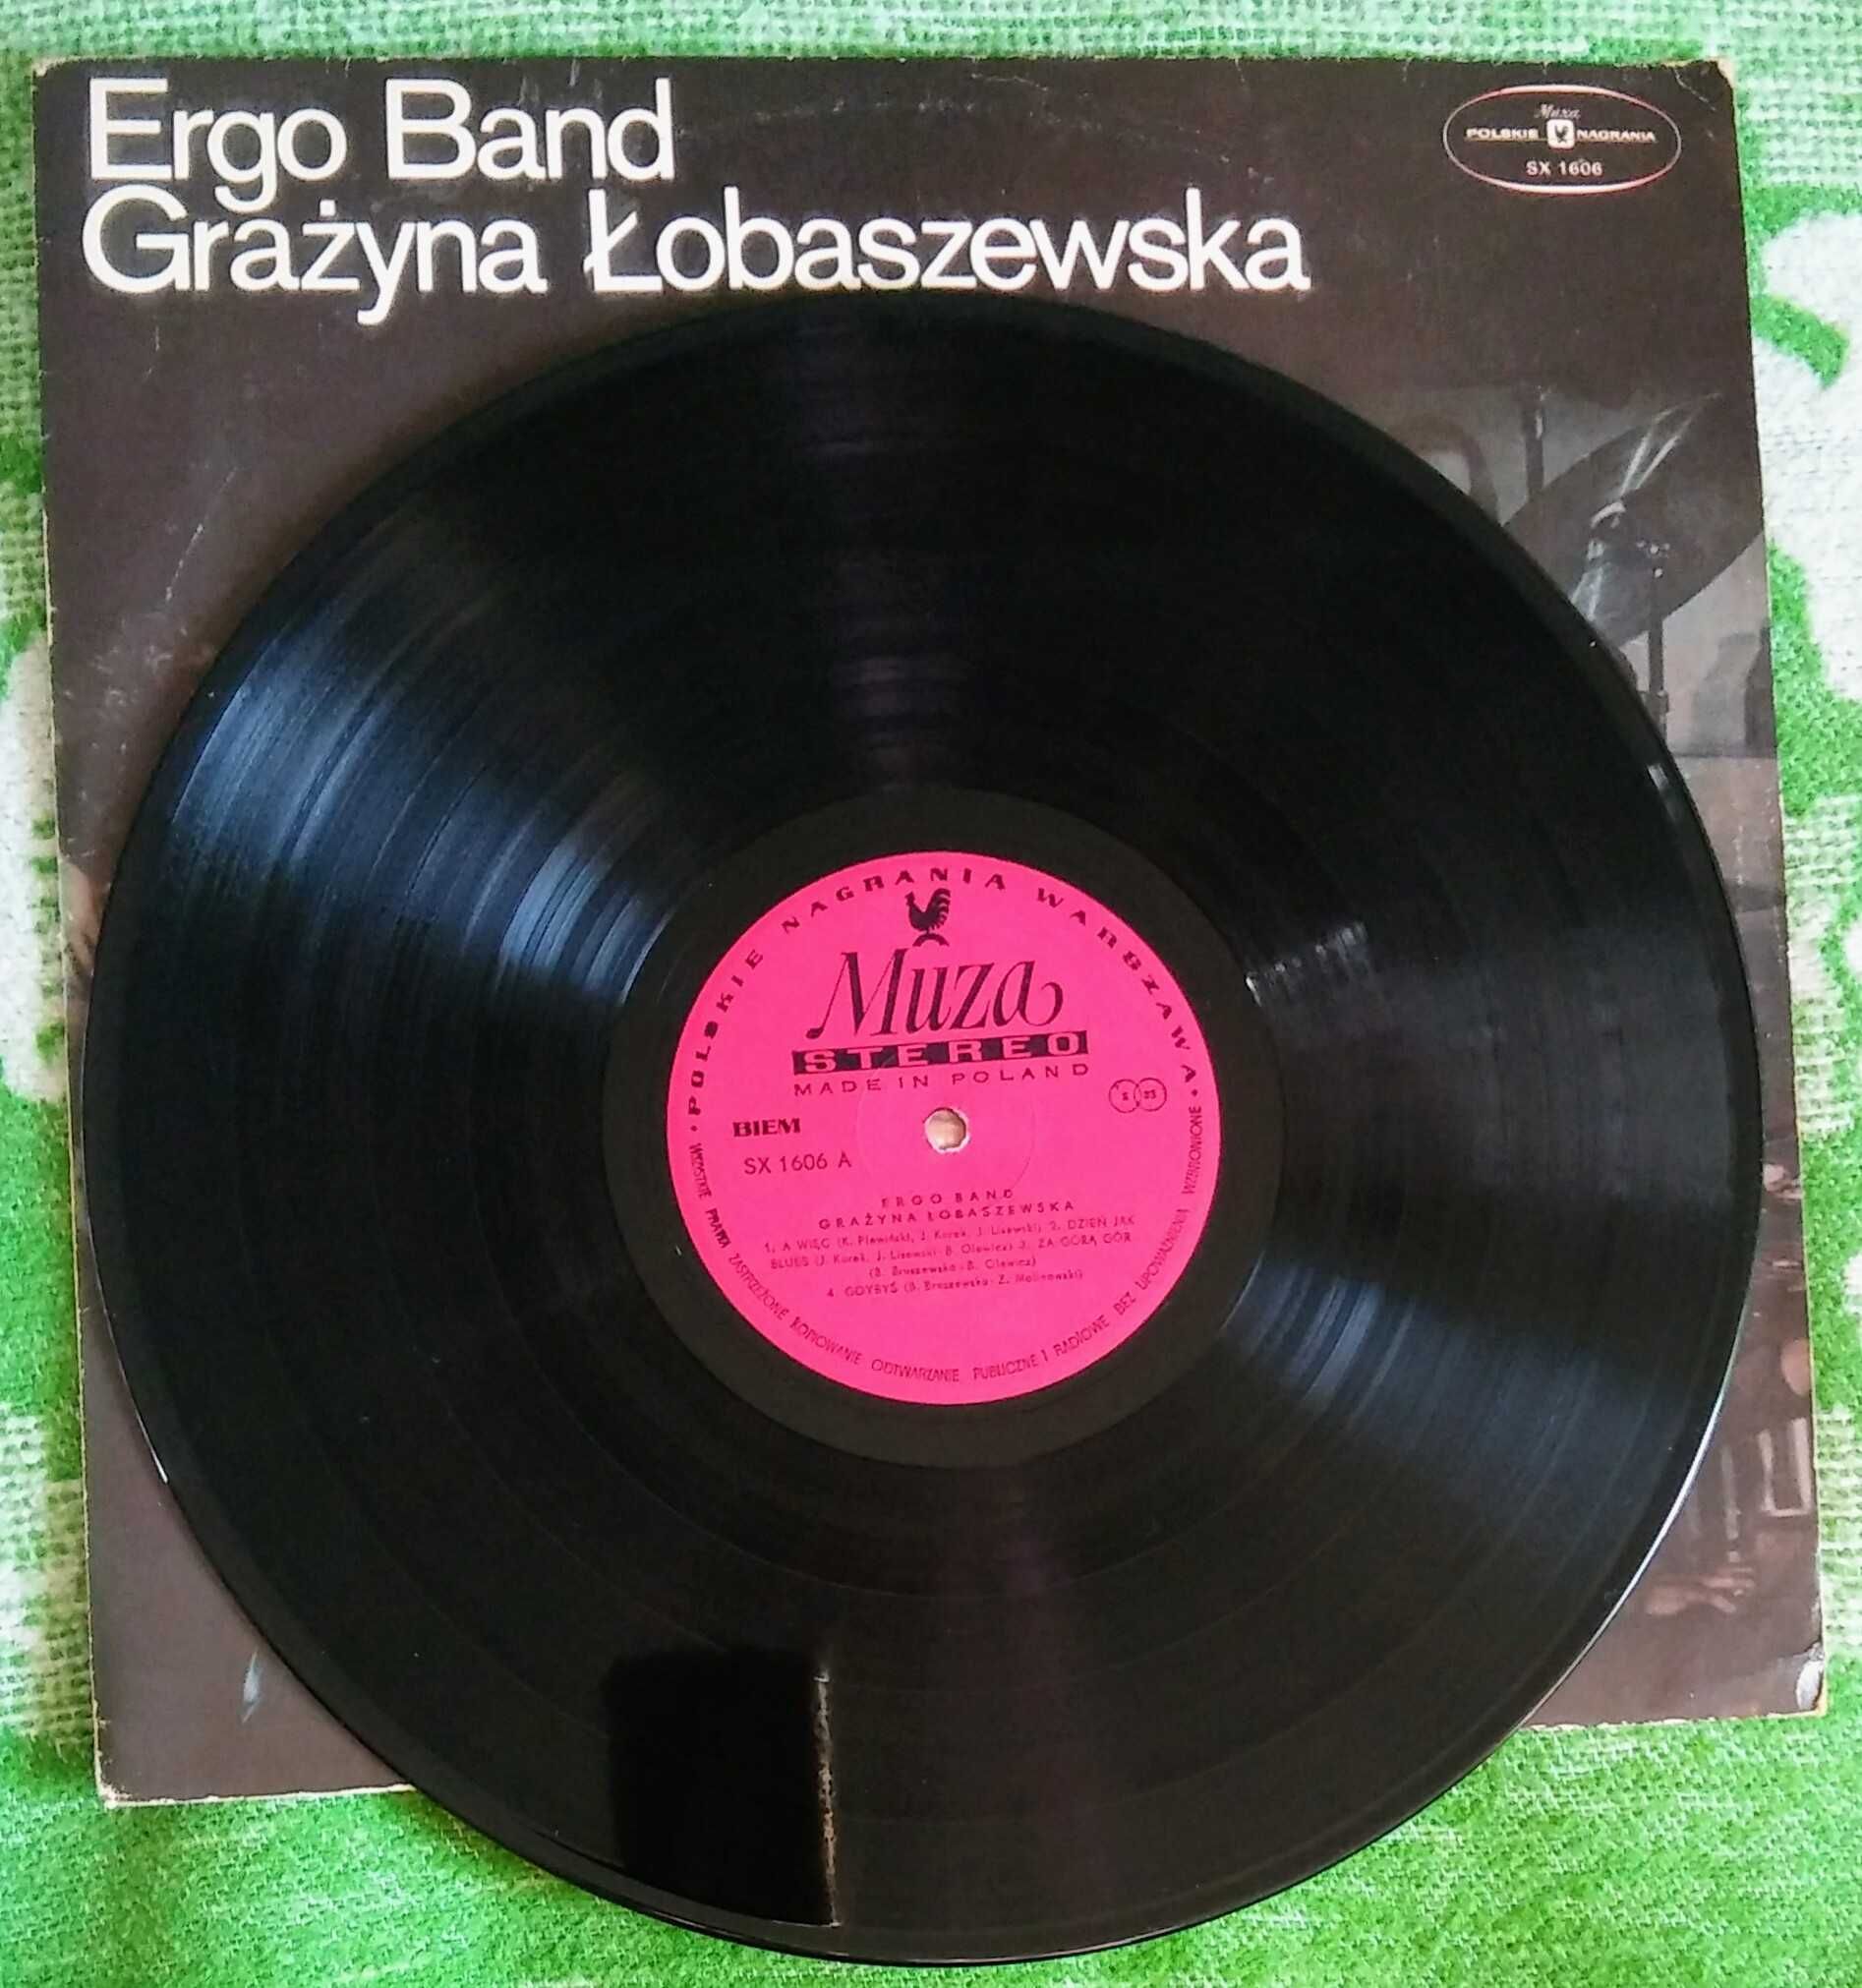 Ergo Band Grażyna Łobaszewska 1978. 1 - wsze wyd.